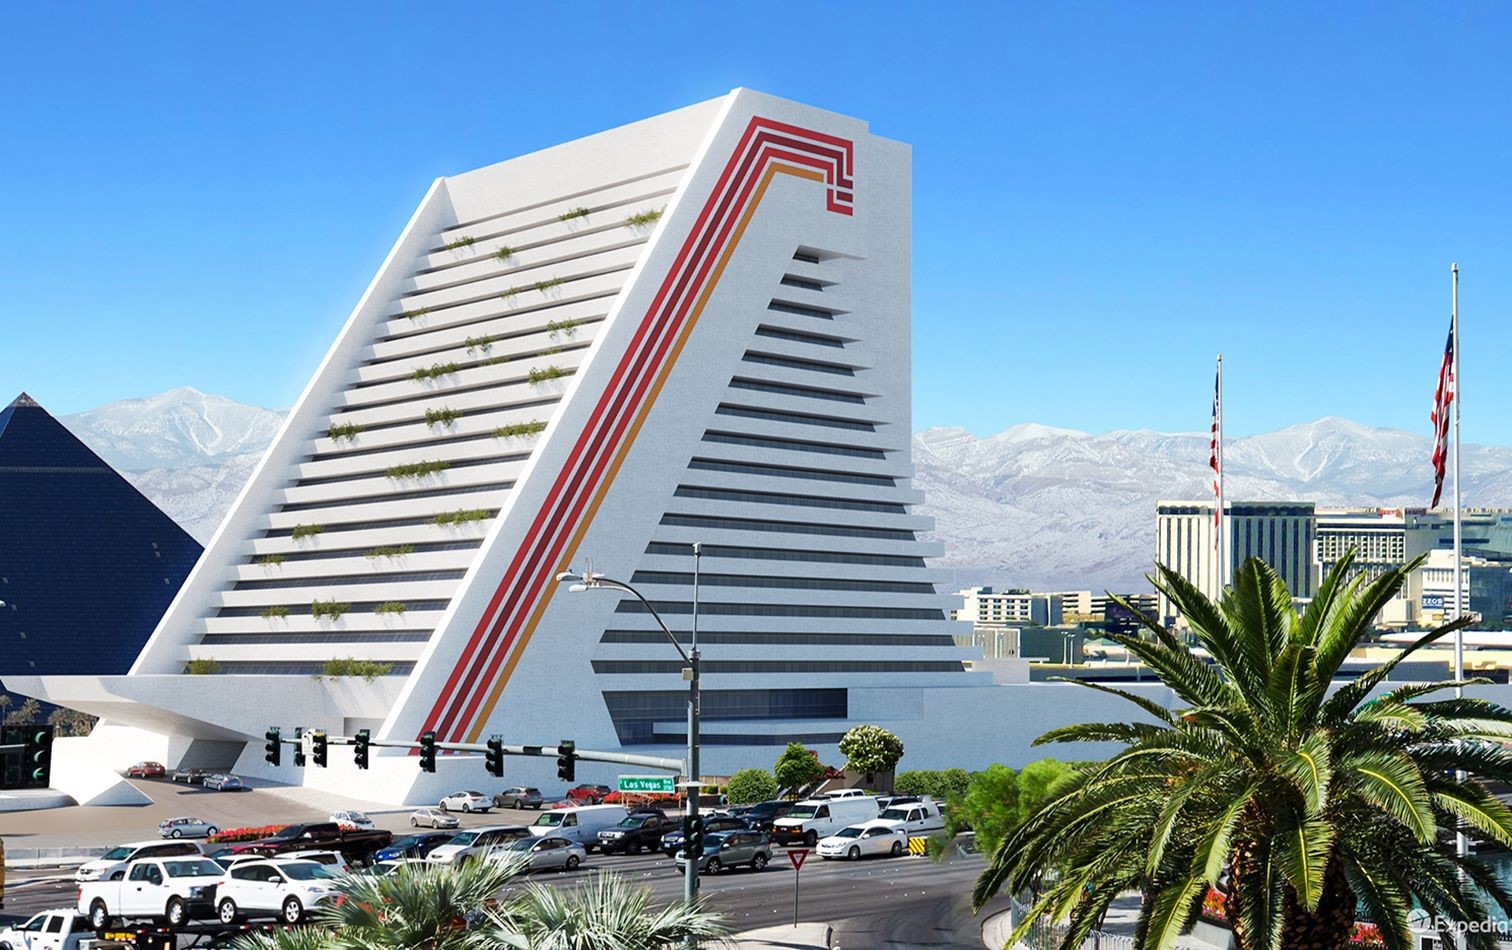 Las Vegas strotzt nur so vor spektakulären architektonischen Merkmalen. Das «Xanadu Hotel» ist da keine Ausnahme, nur leider wurde es nie gebaut. Der pyramidenartige Bau scheiterte aufgrund eines Streits bei Abwasserinstallationen.